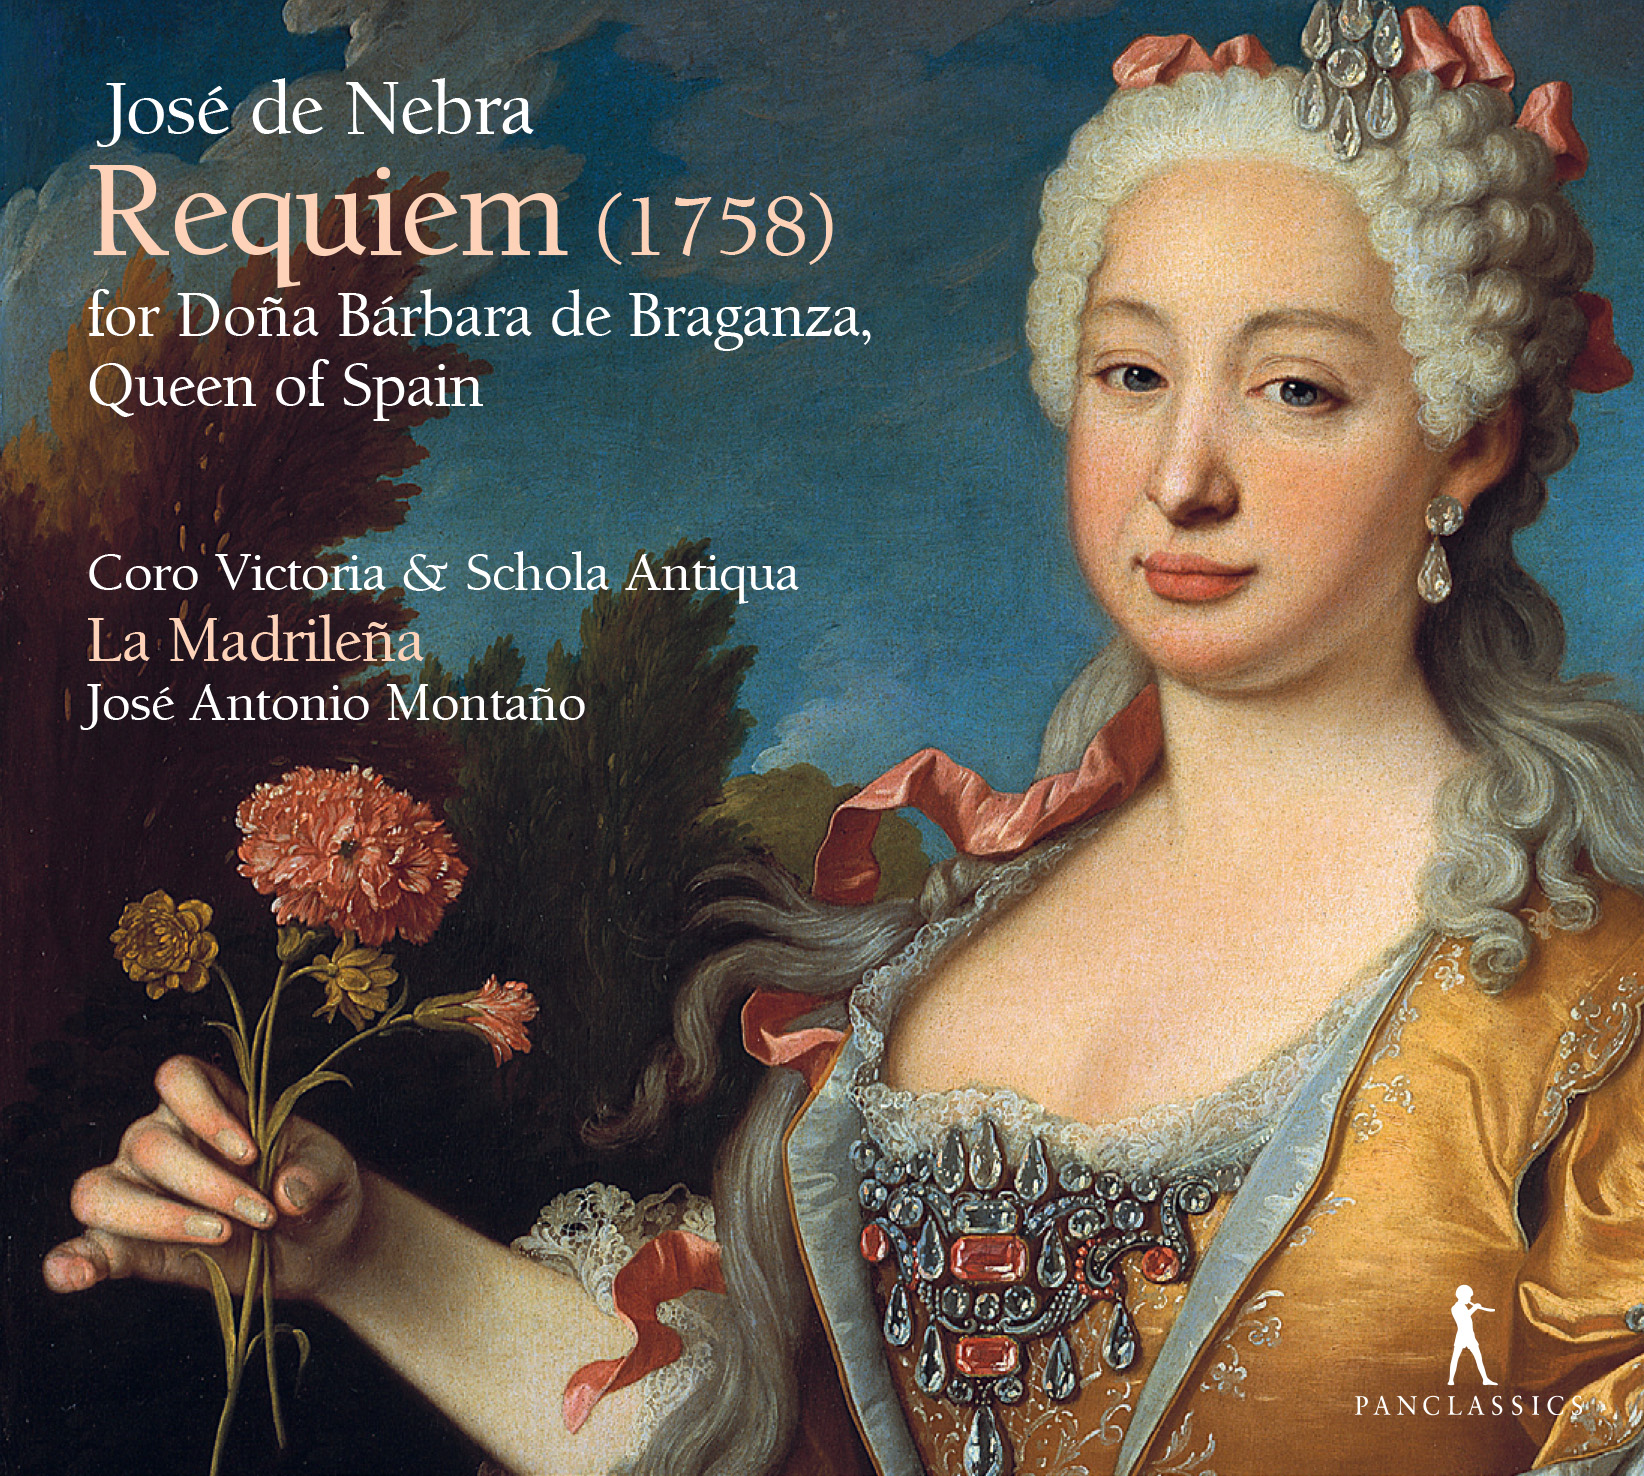 CD Requiem José de Nebra José Antonio Montaño La Madrileña Coro Victoria Schola Antiqua Pan Classics